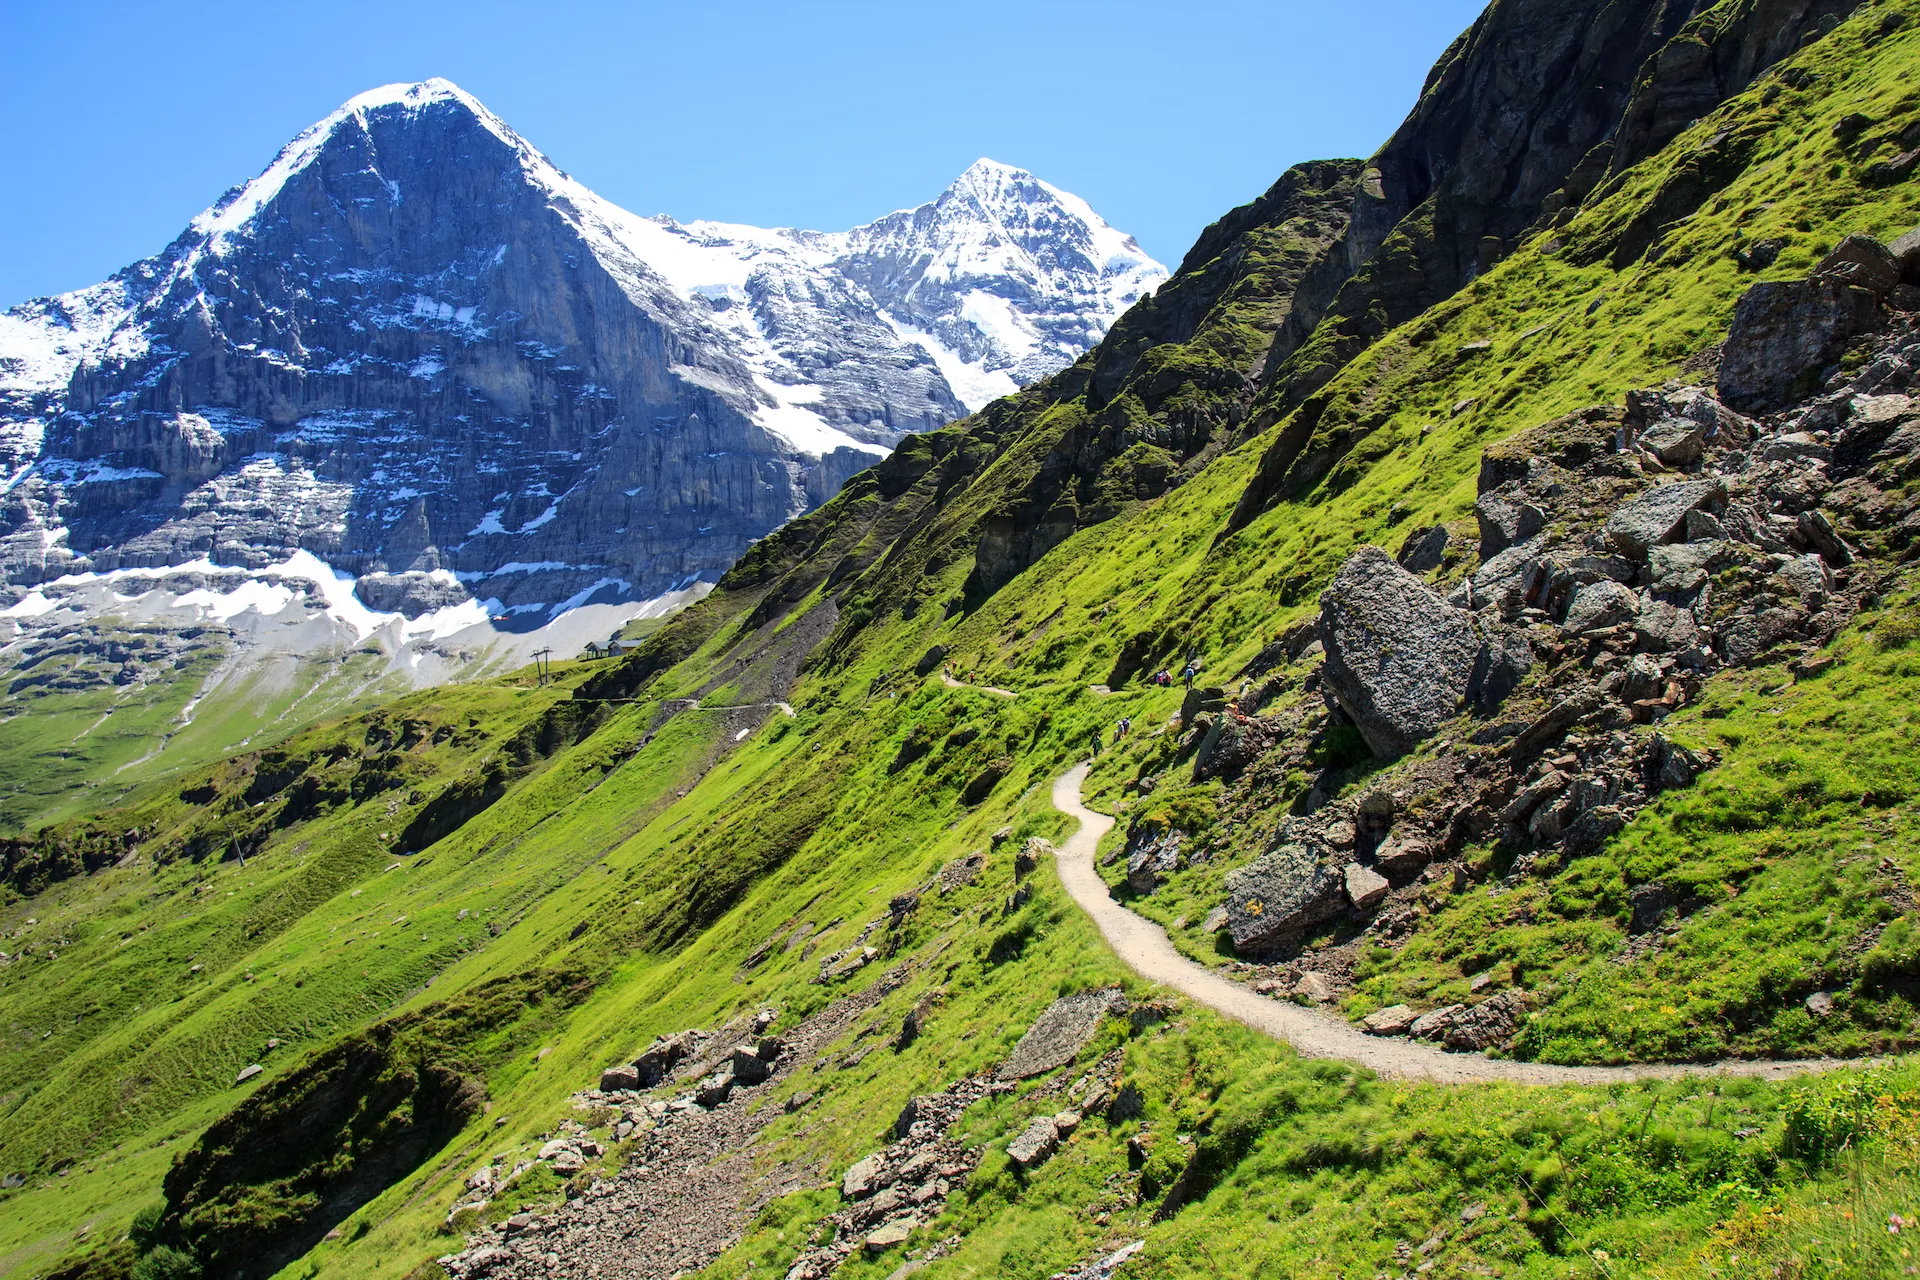 Panoramaweg vom Mannlichen zur Kleinen Scheidegg mit Blick auf den Eiger